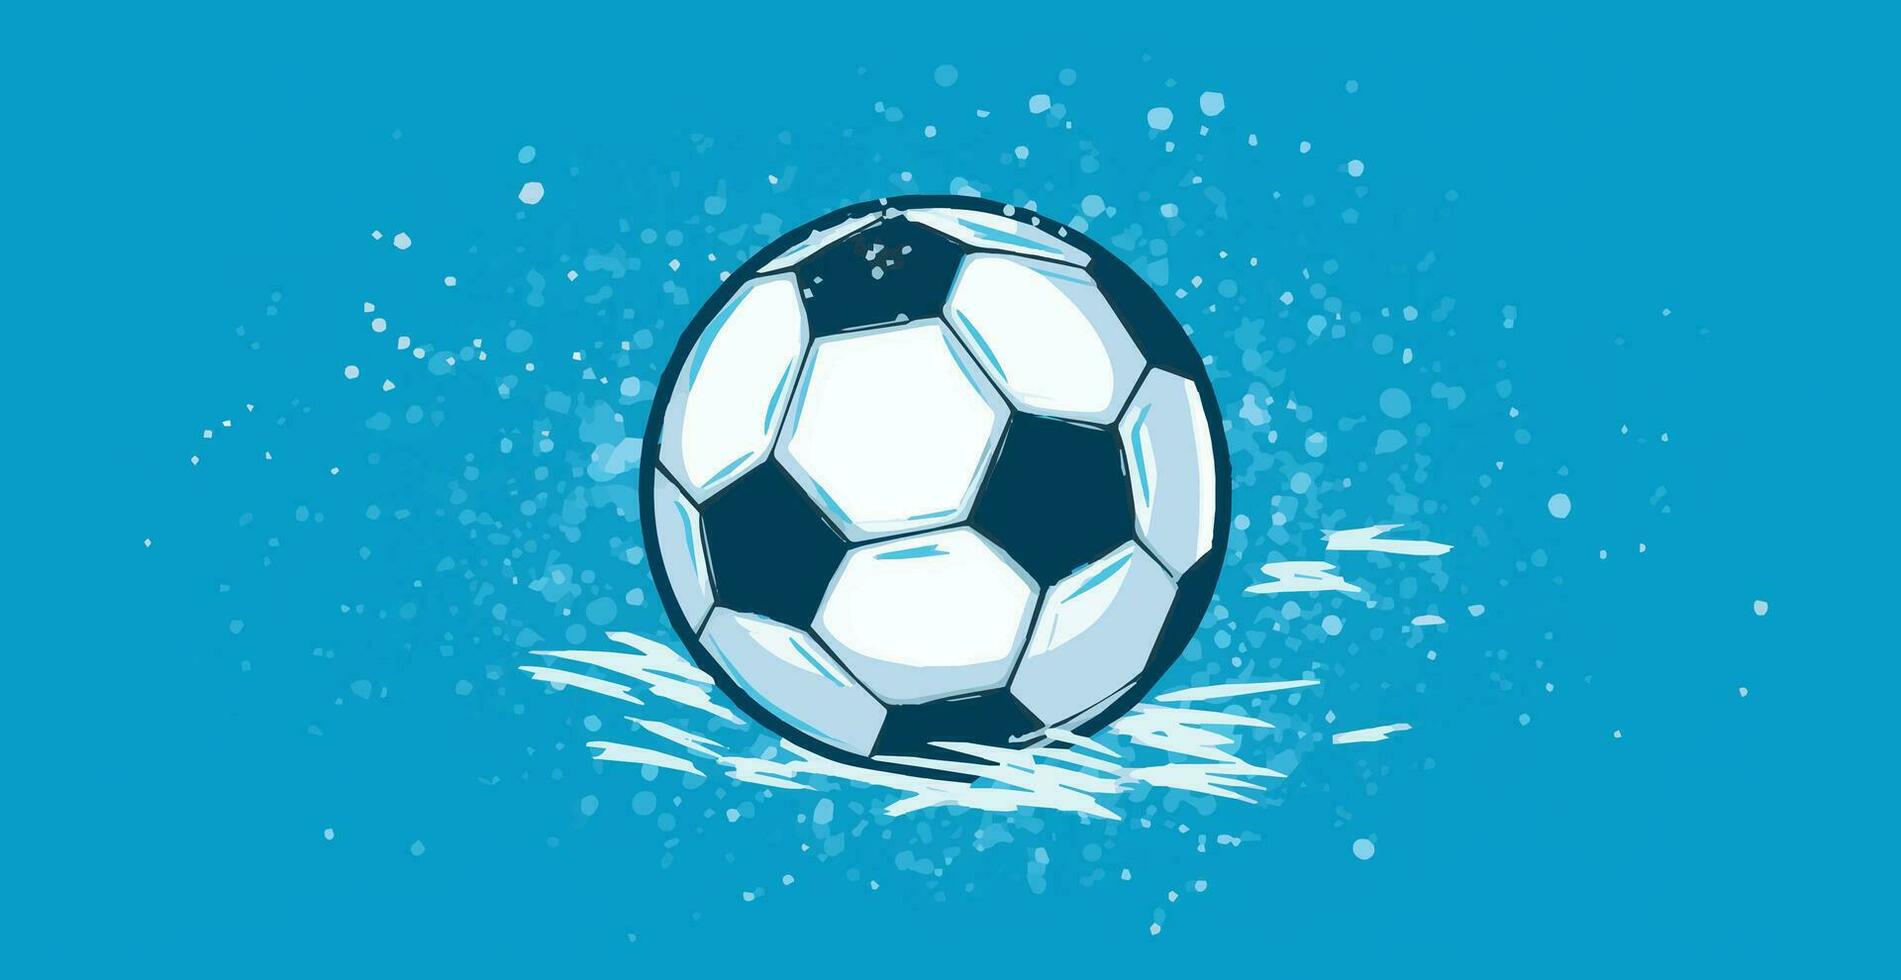 resumen fútbol pelota en azul acuarela panorámico fondo, mosaico estilo - vector